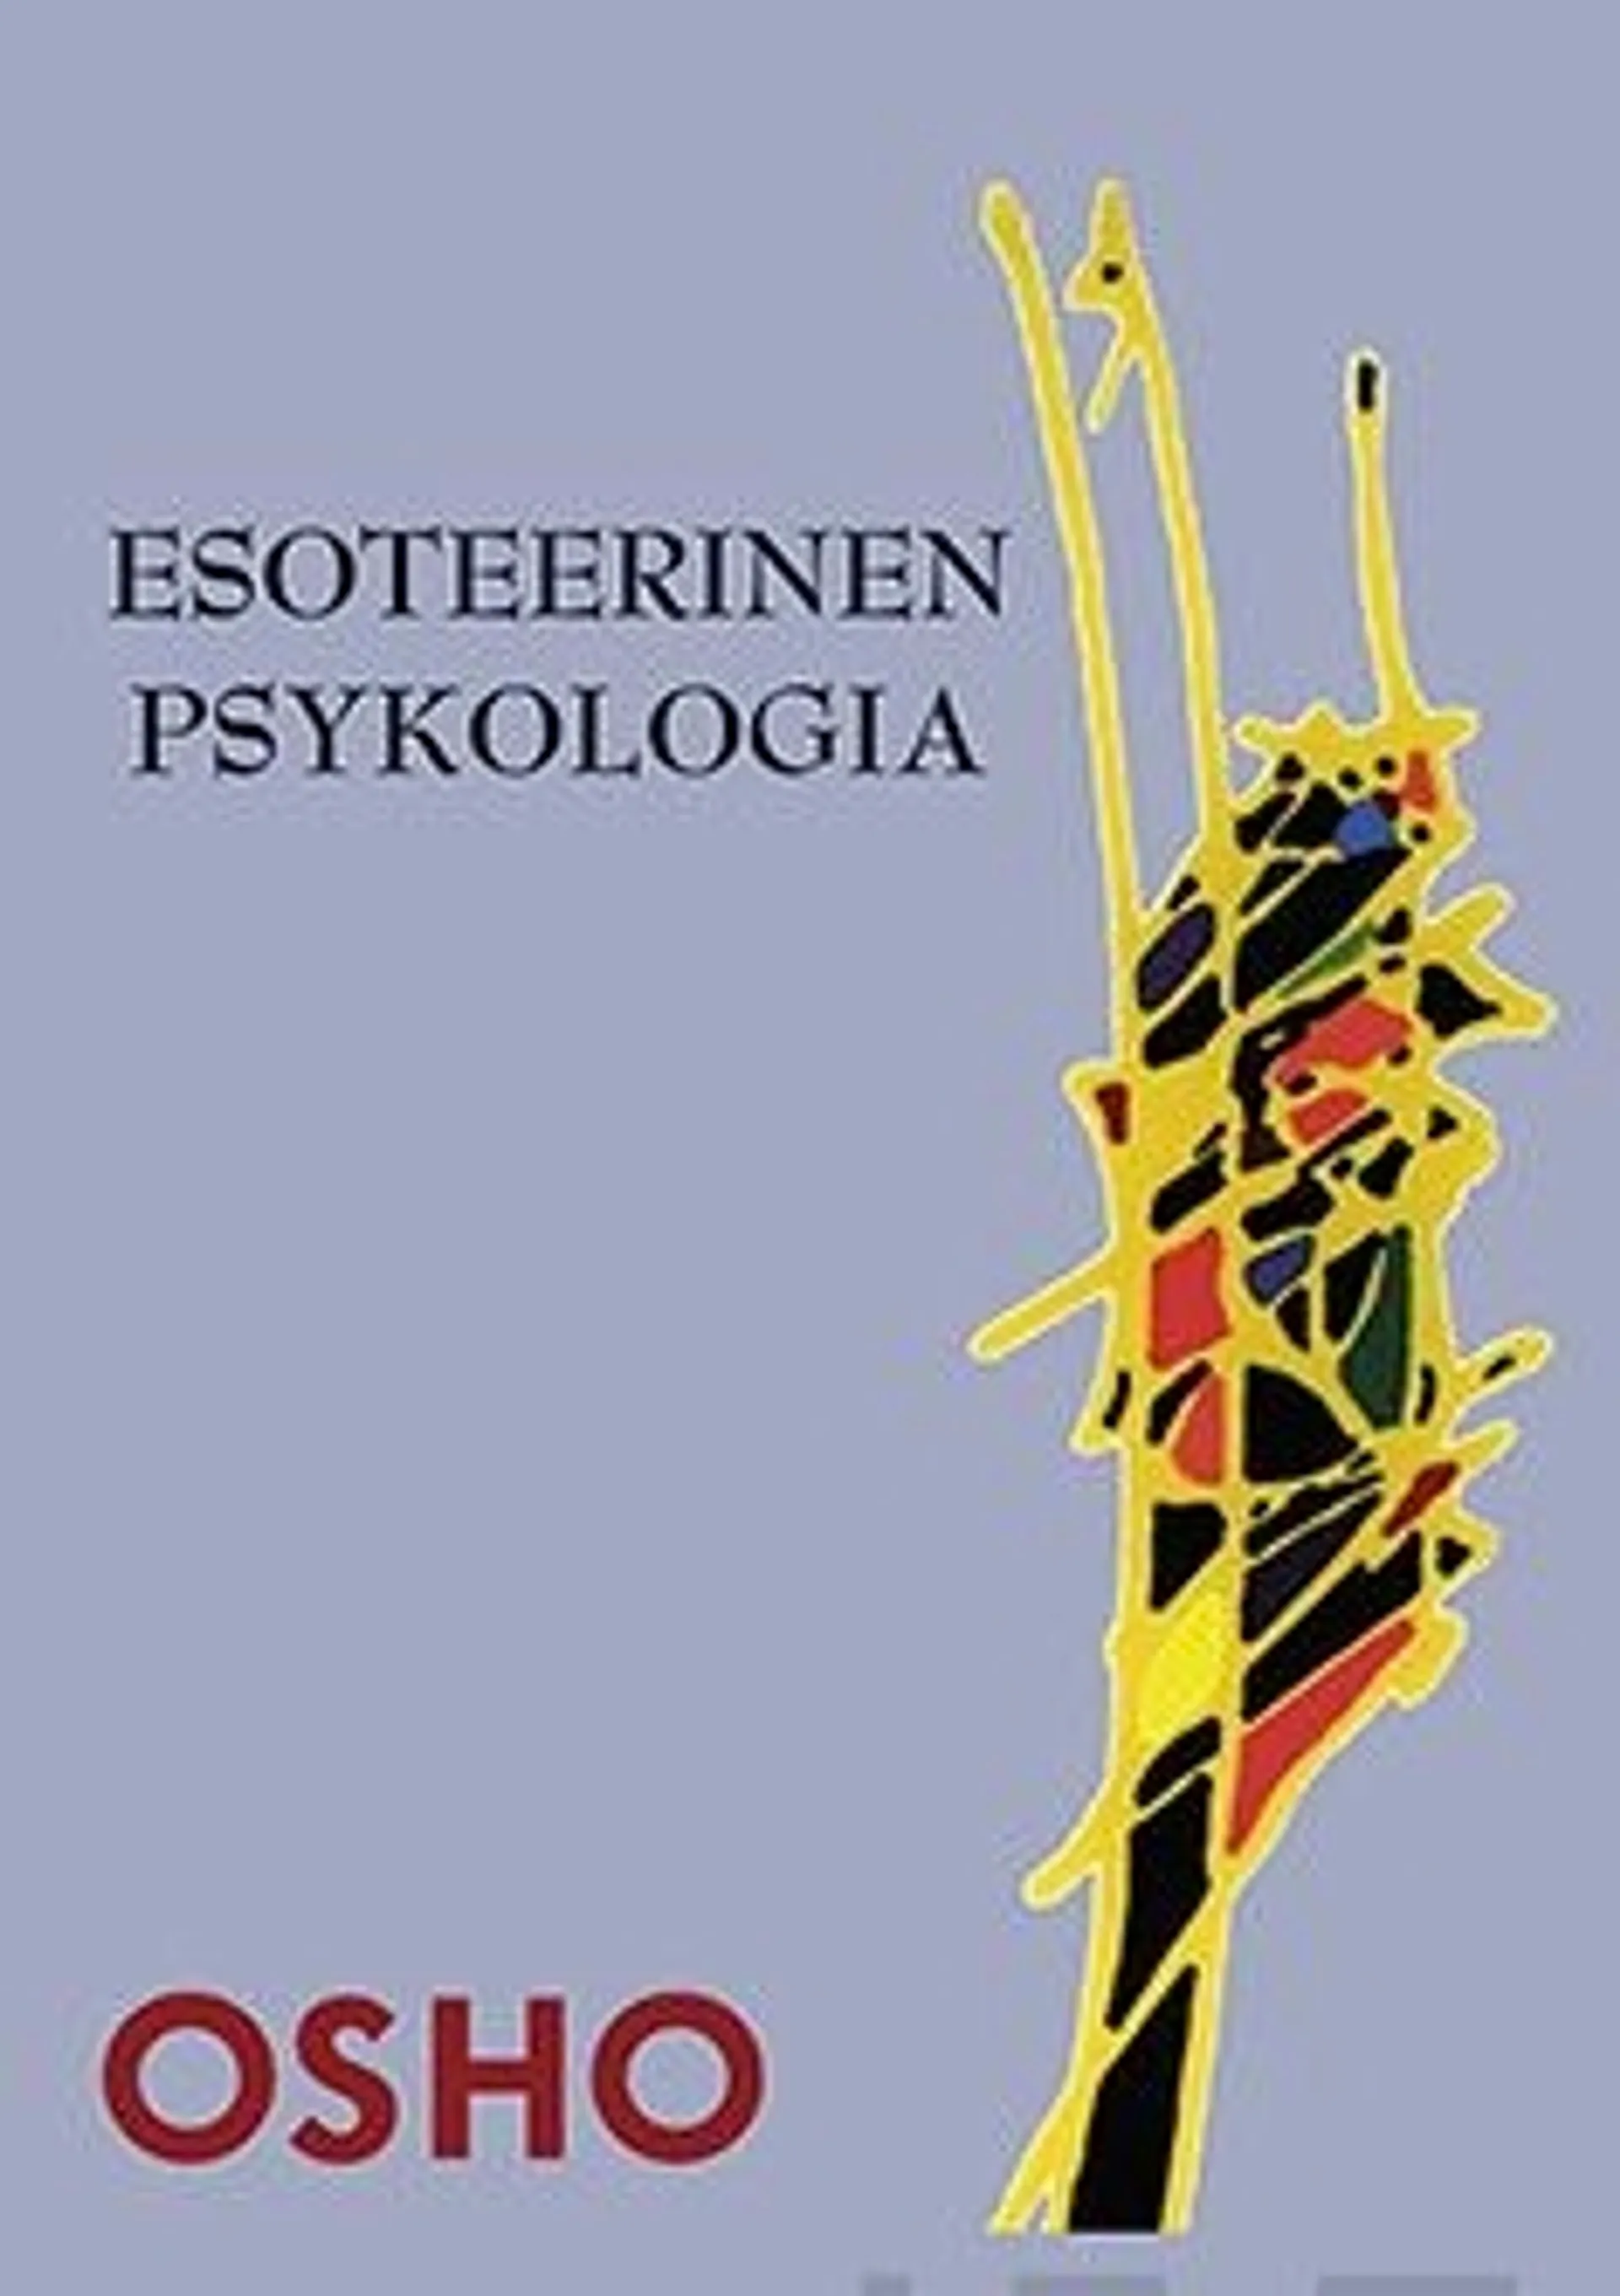 Osho, Esoteerinen psykologia